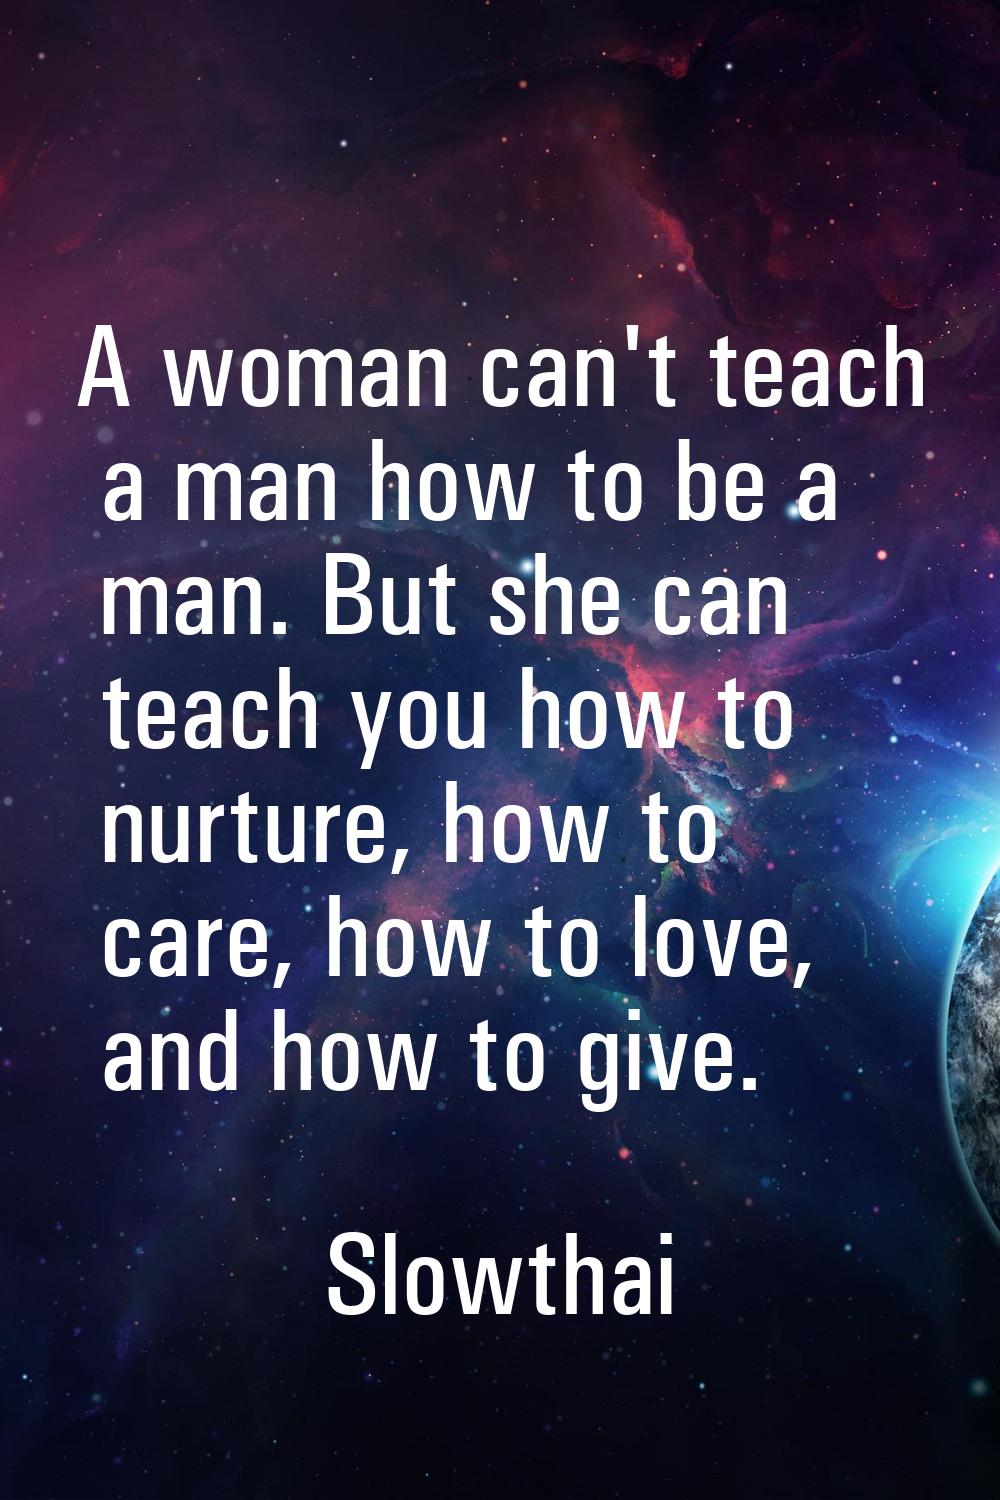 A woman can't teach a man how to be a man. But she can teach you how to nurture, how to care, how t